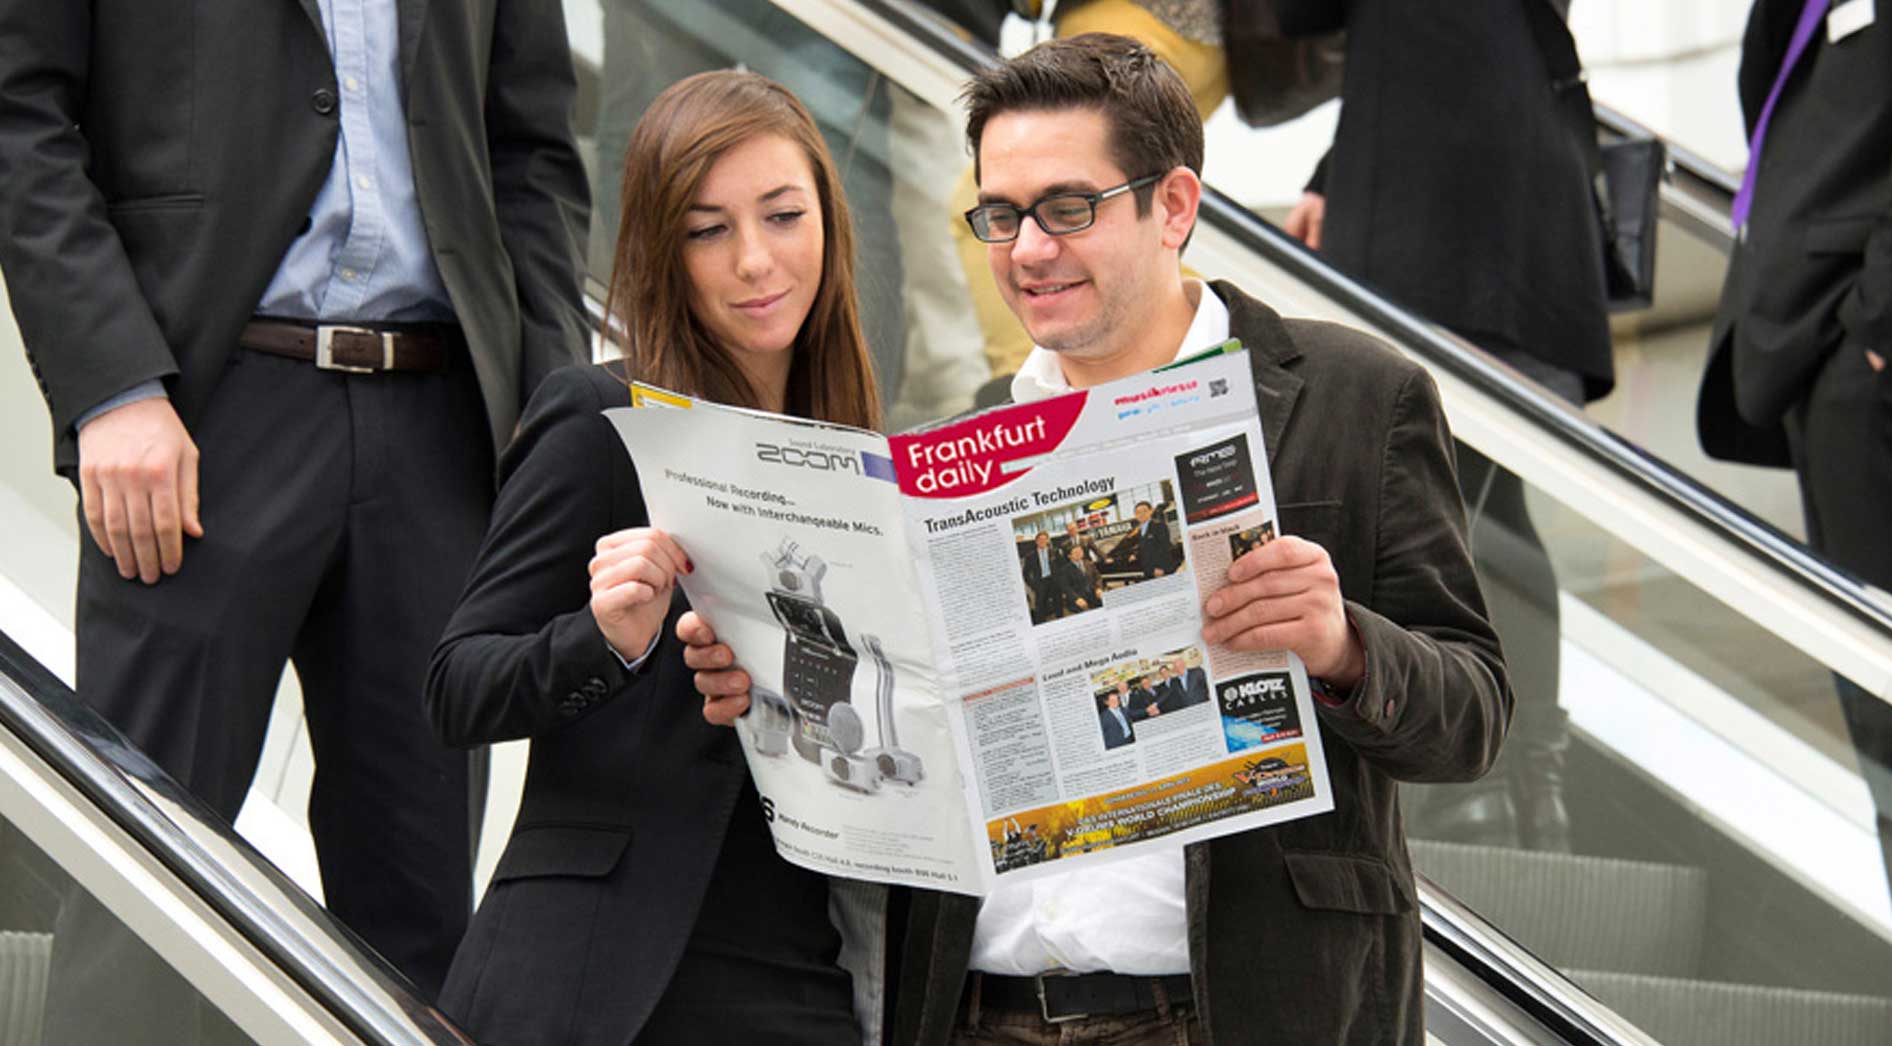 2 Personen lesen das Messemagazin Frankfurt Daily